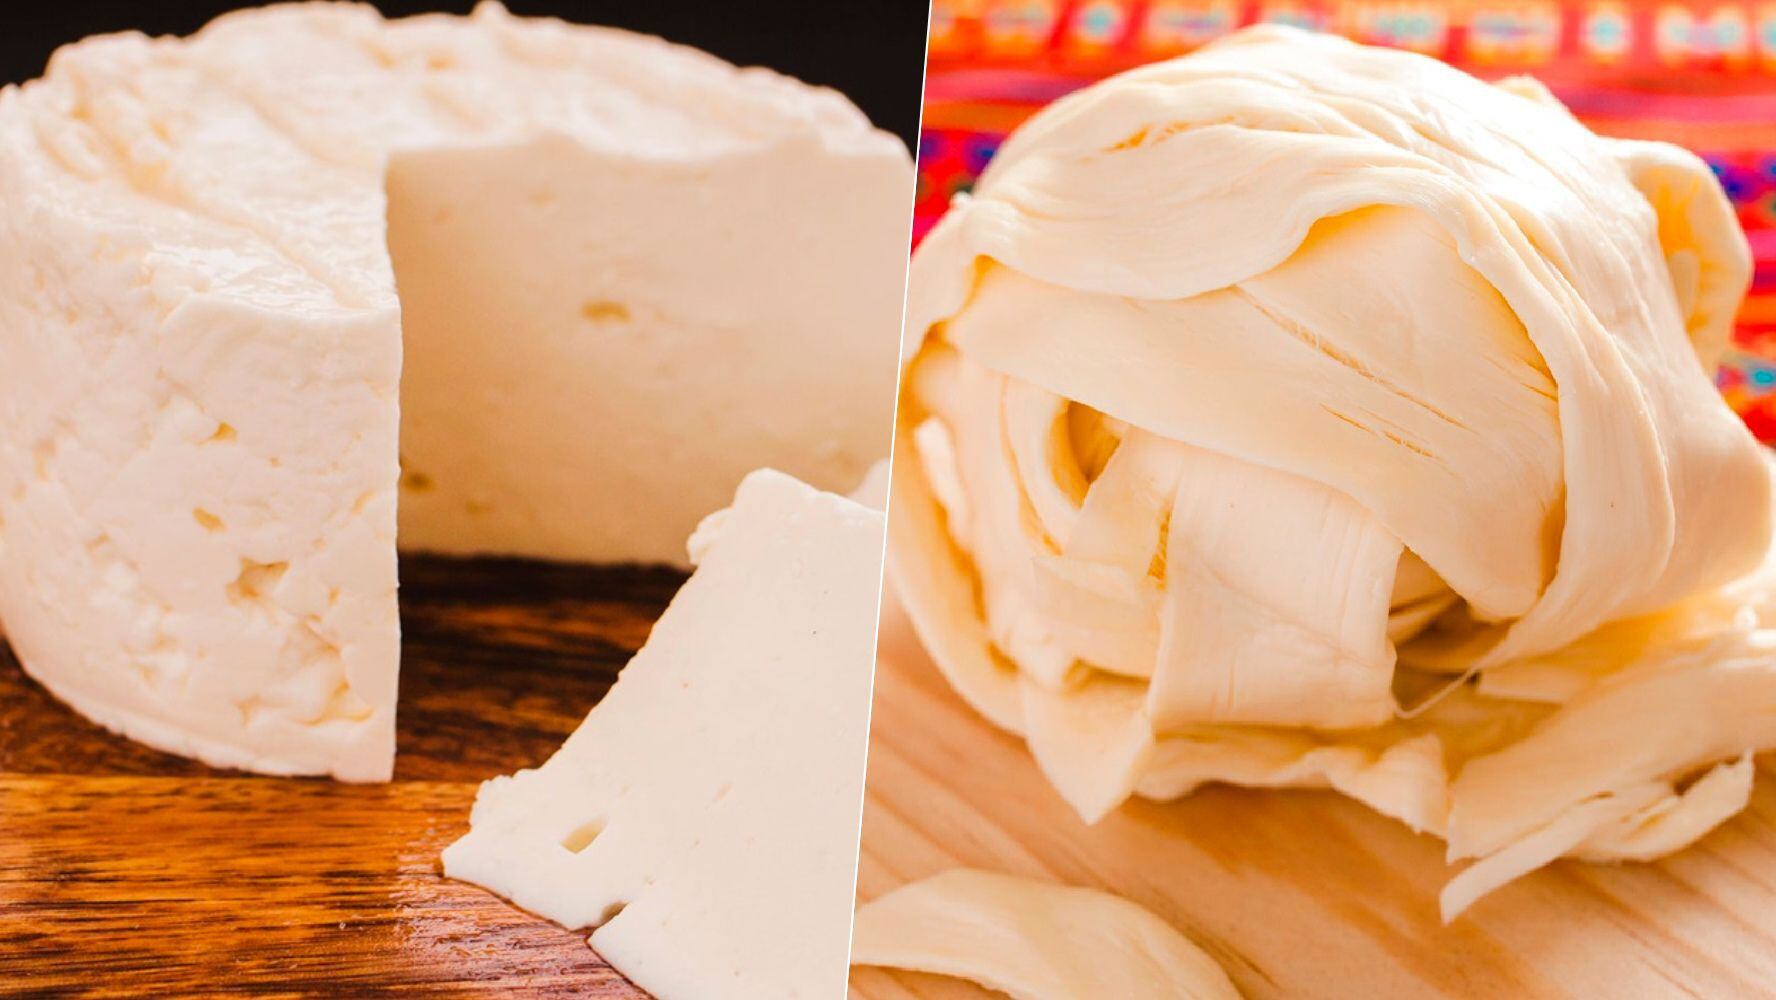 Tanto el queso panela como el de hebra son originarios de México. (Foto: Shutterstock)